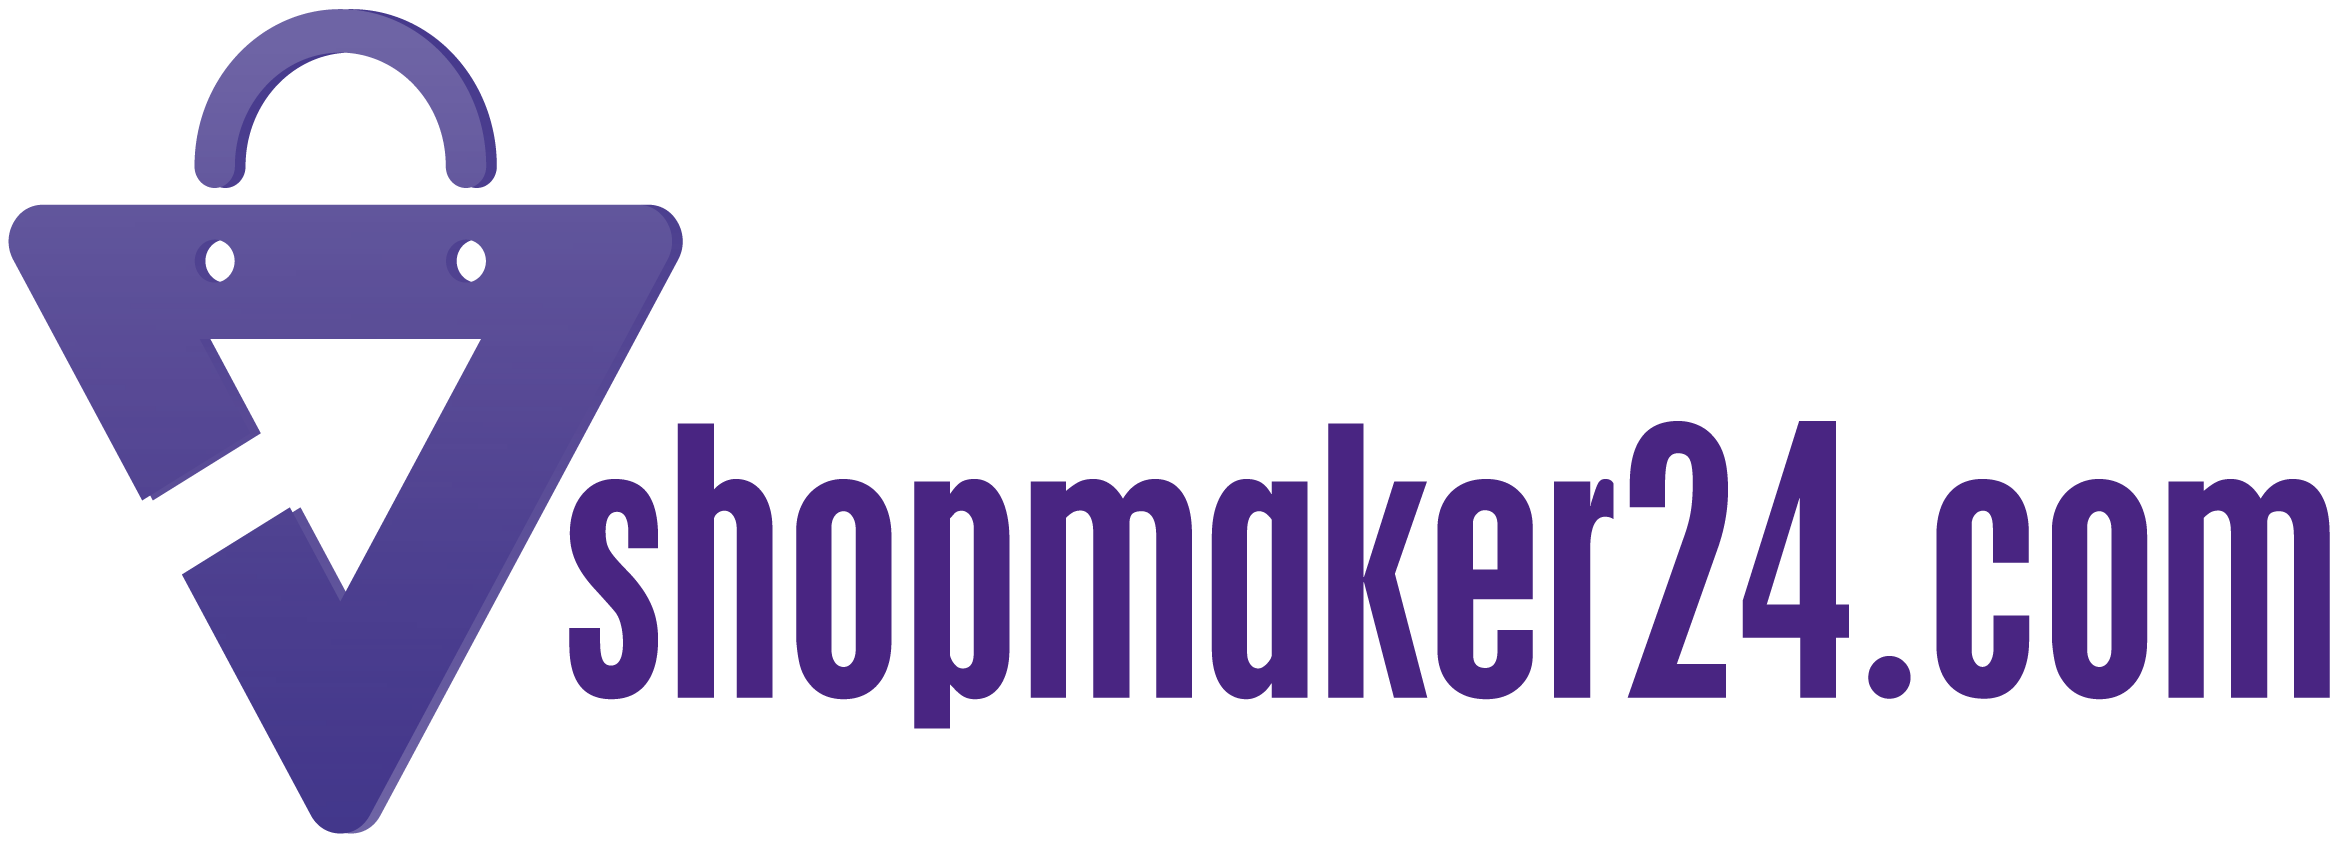 shopmaker24.com